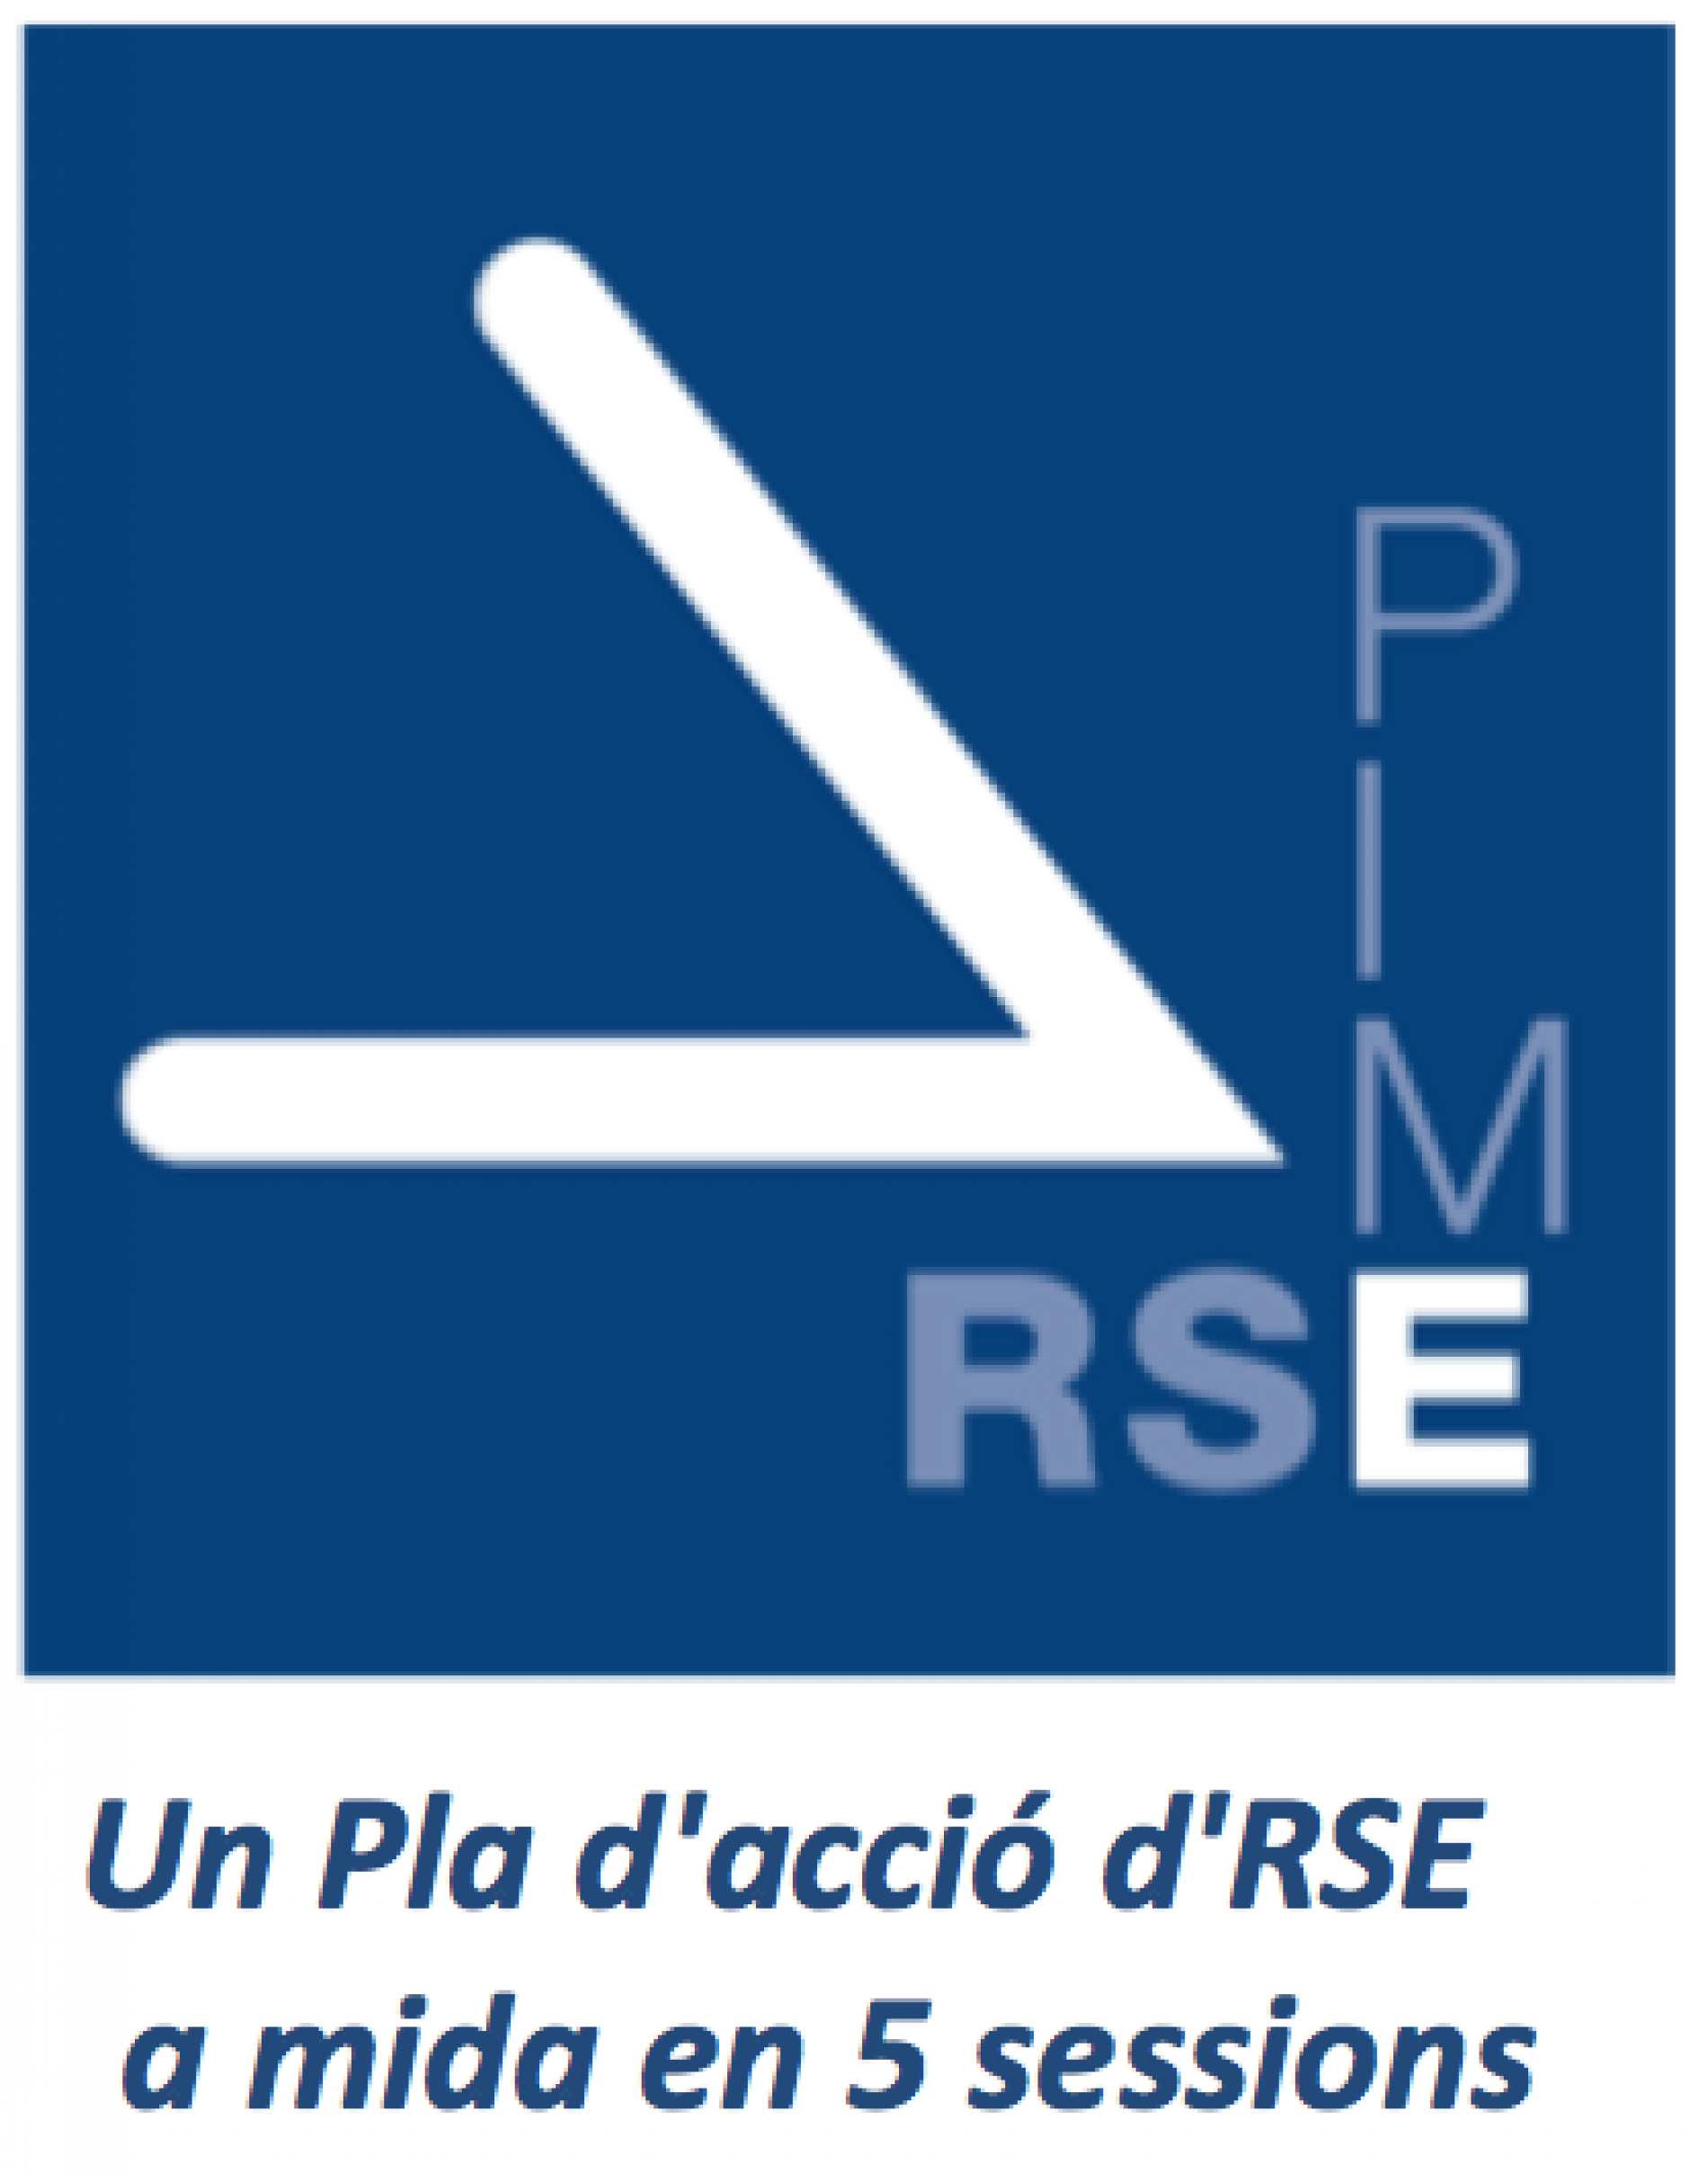 [VÍDEO] Reportatge del Programa RSE.Pime 2015